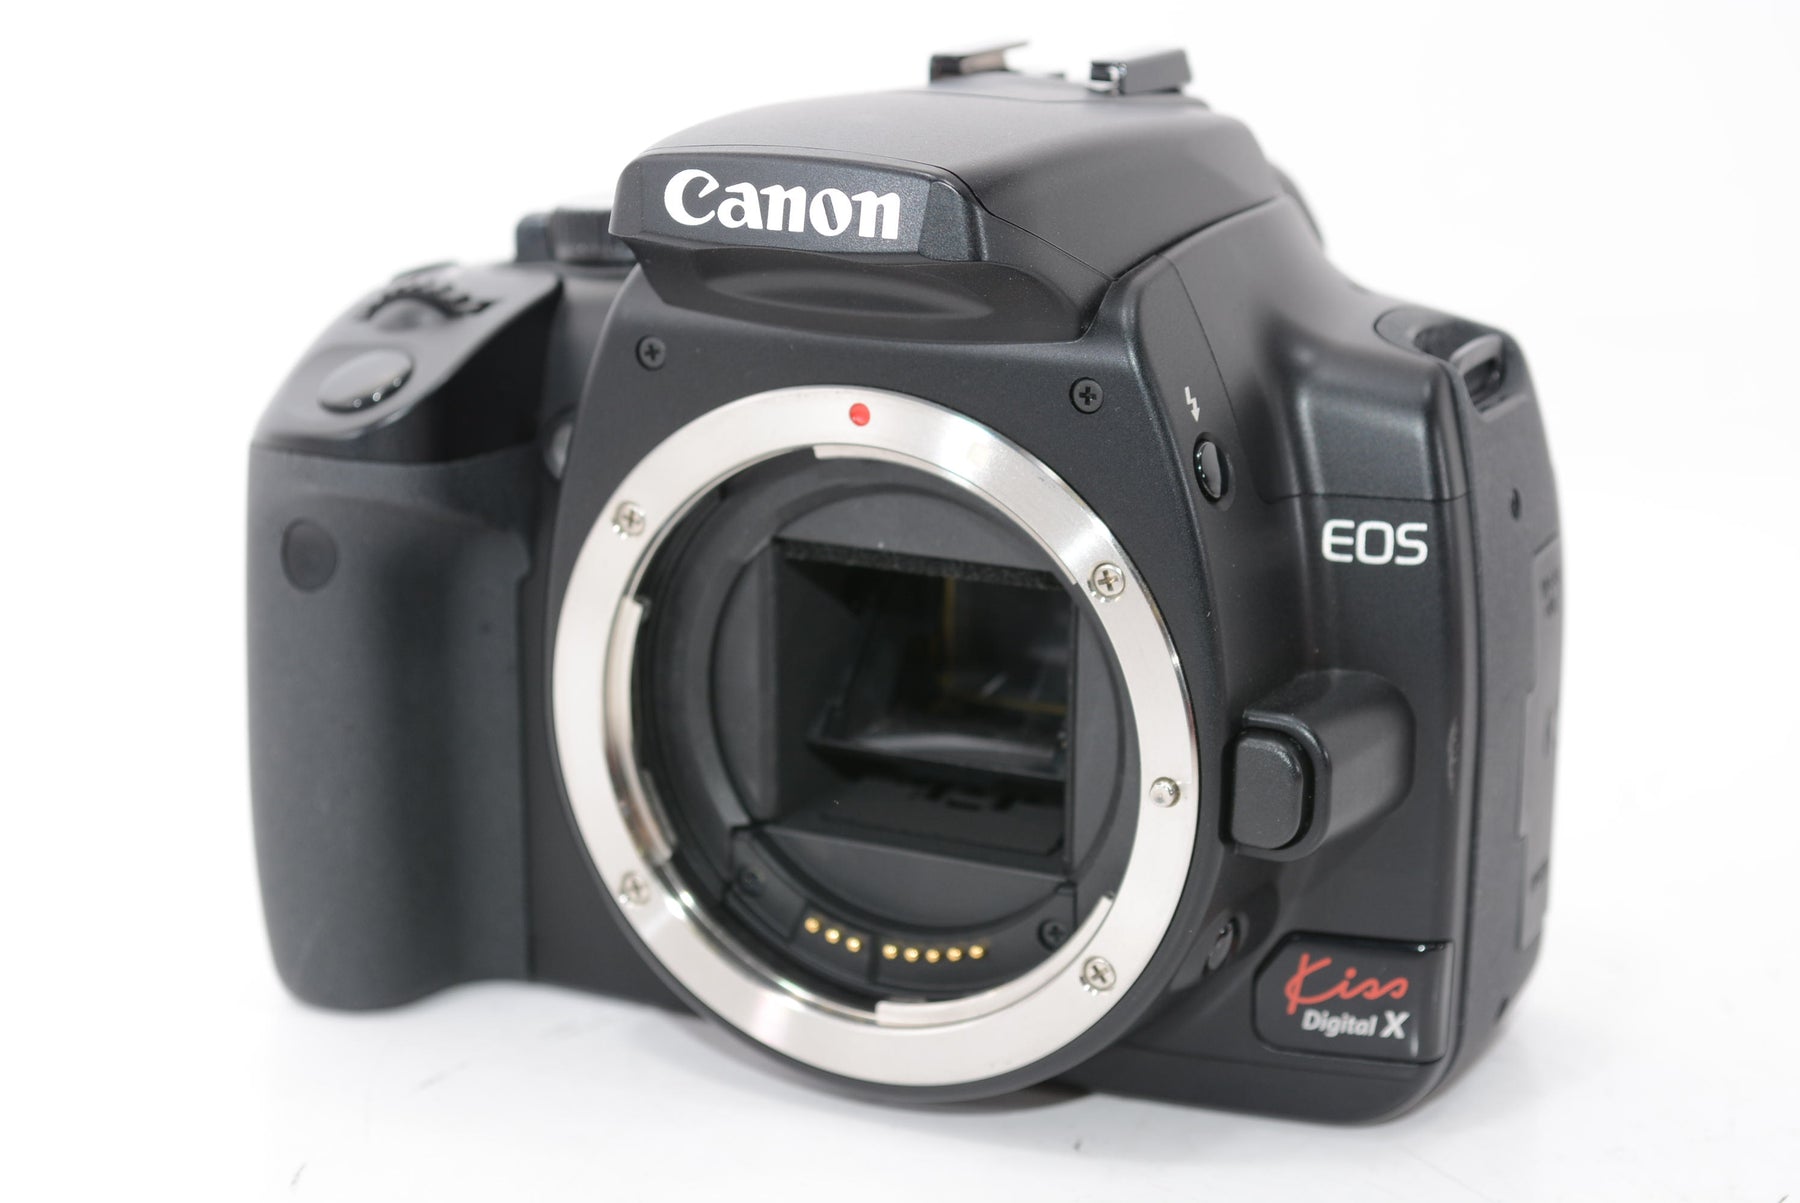 【外観並級】Canon デジタル一眼レフカメラ EOS Kiss デジタル X ボディ本体 ブラック KISSDXB-BODY